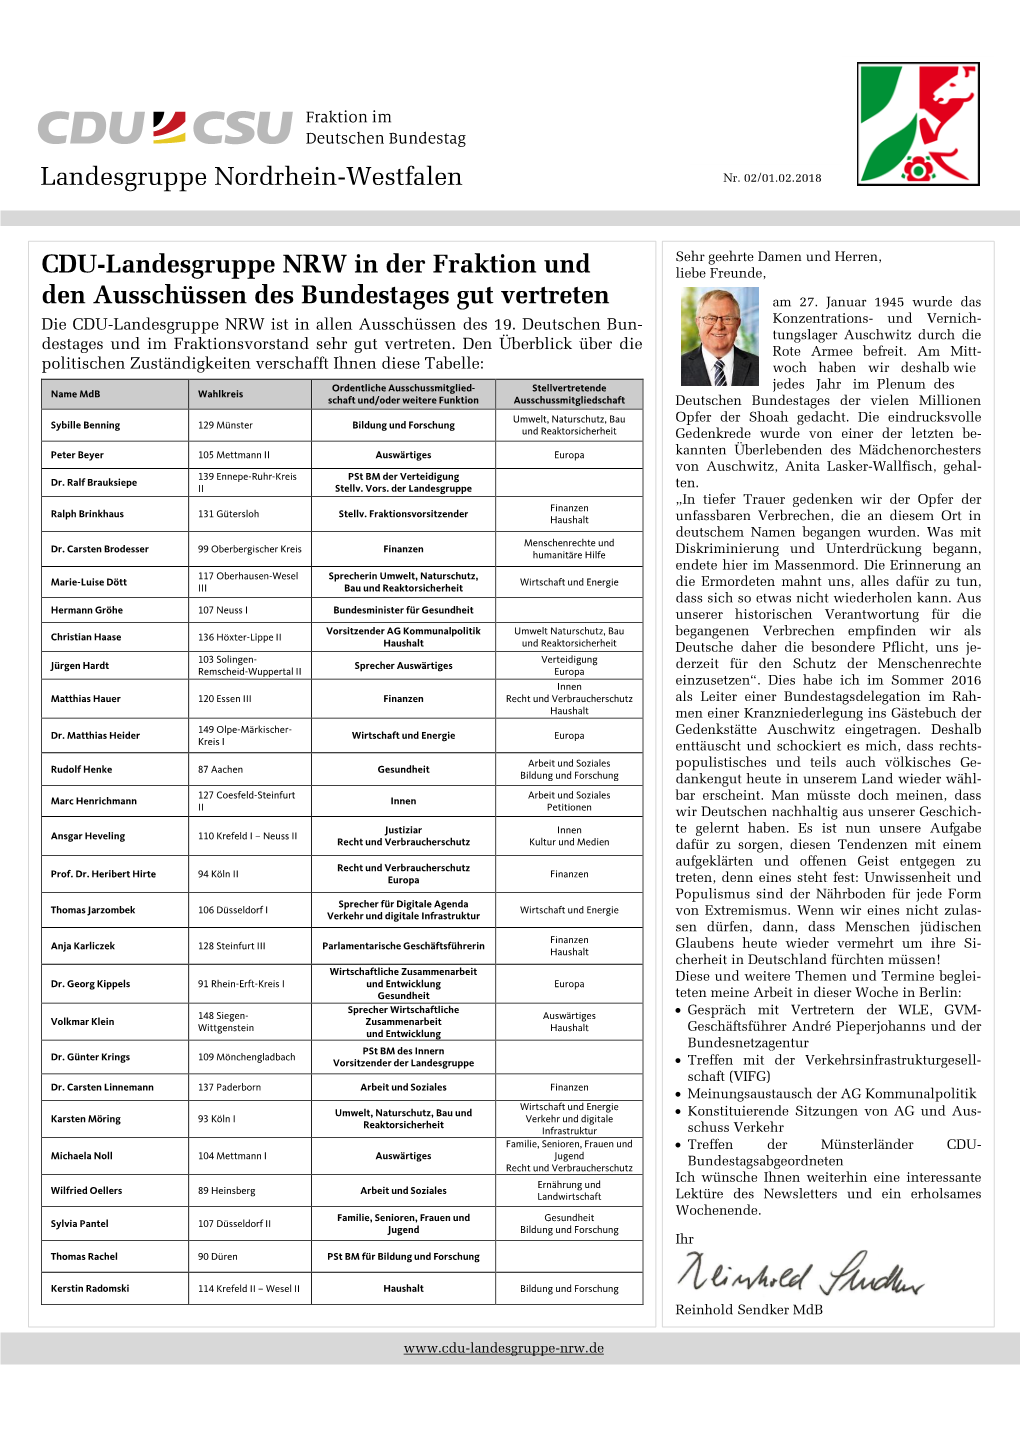 CDU-Landesgruppe NRW in Der Fraktion Und Den Ausschüssen Des Bundestages Gut Vertreten